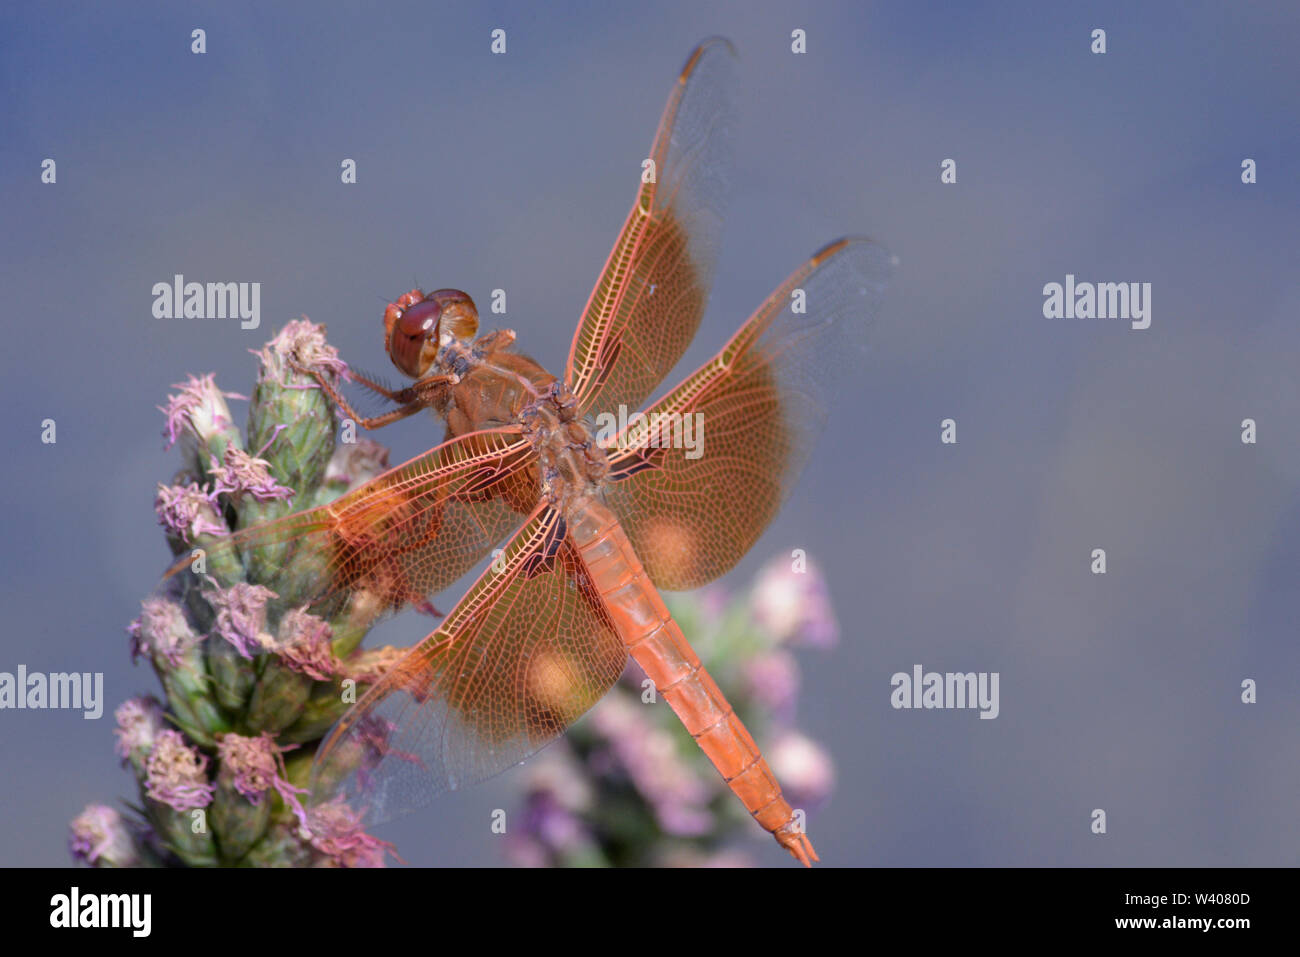 Flamme skimmer Dragonfly thront auf einer Blume am Rande eines Baches. Stockfoto